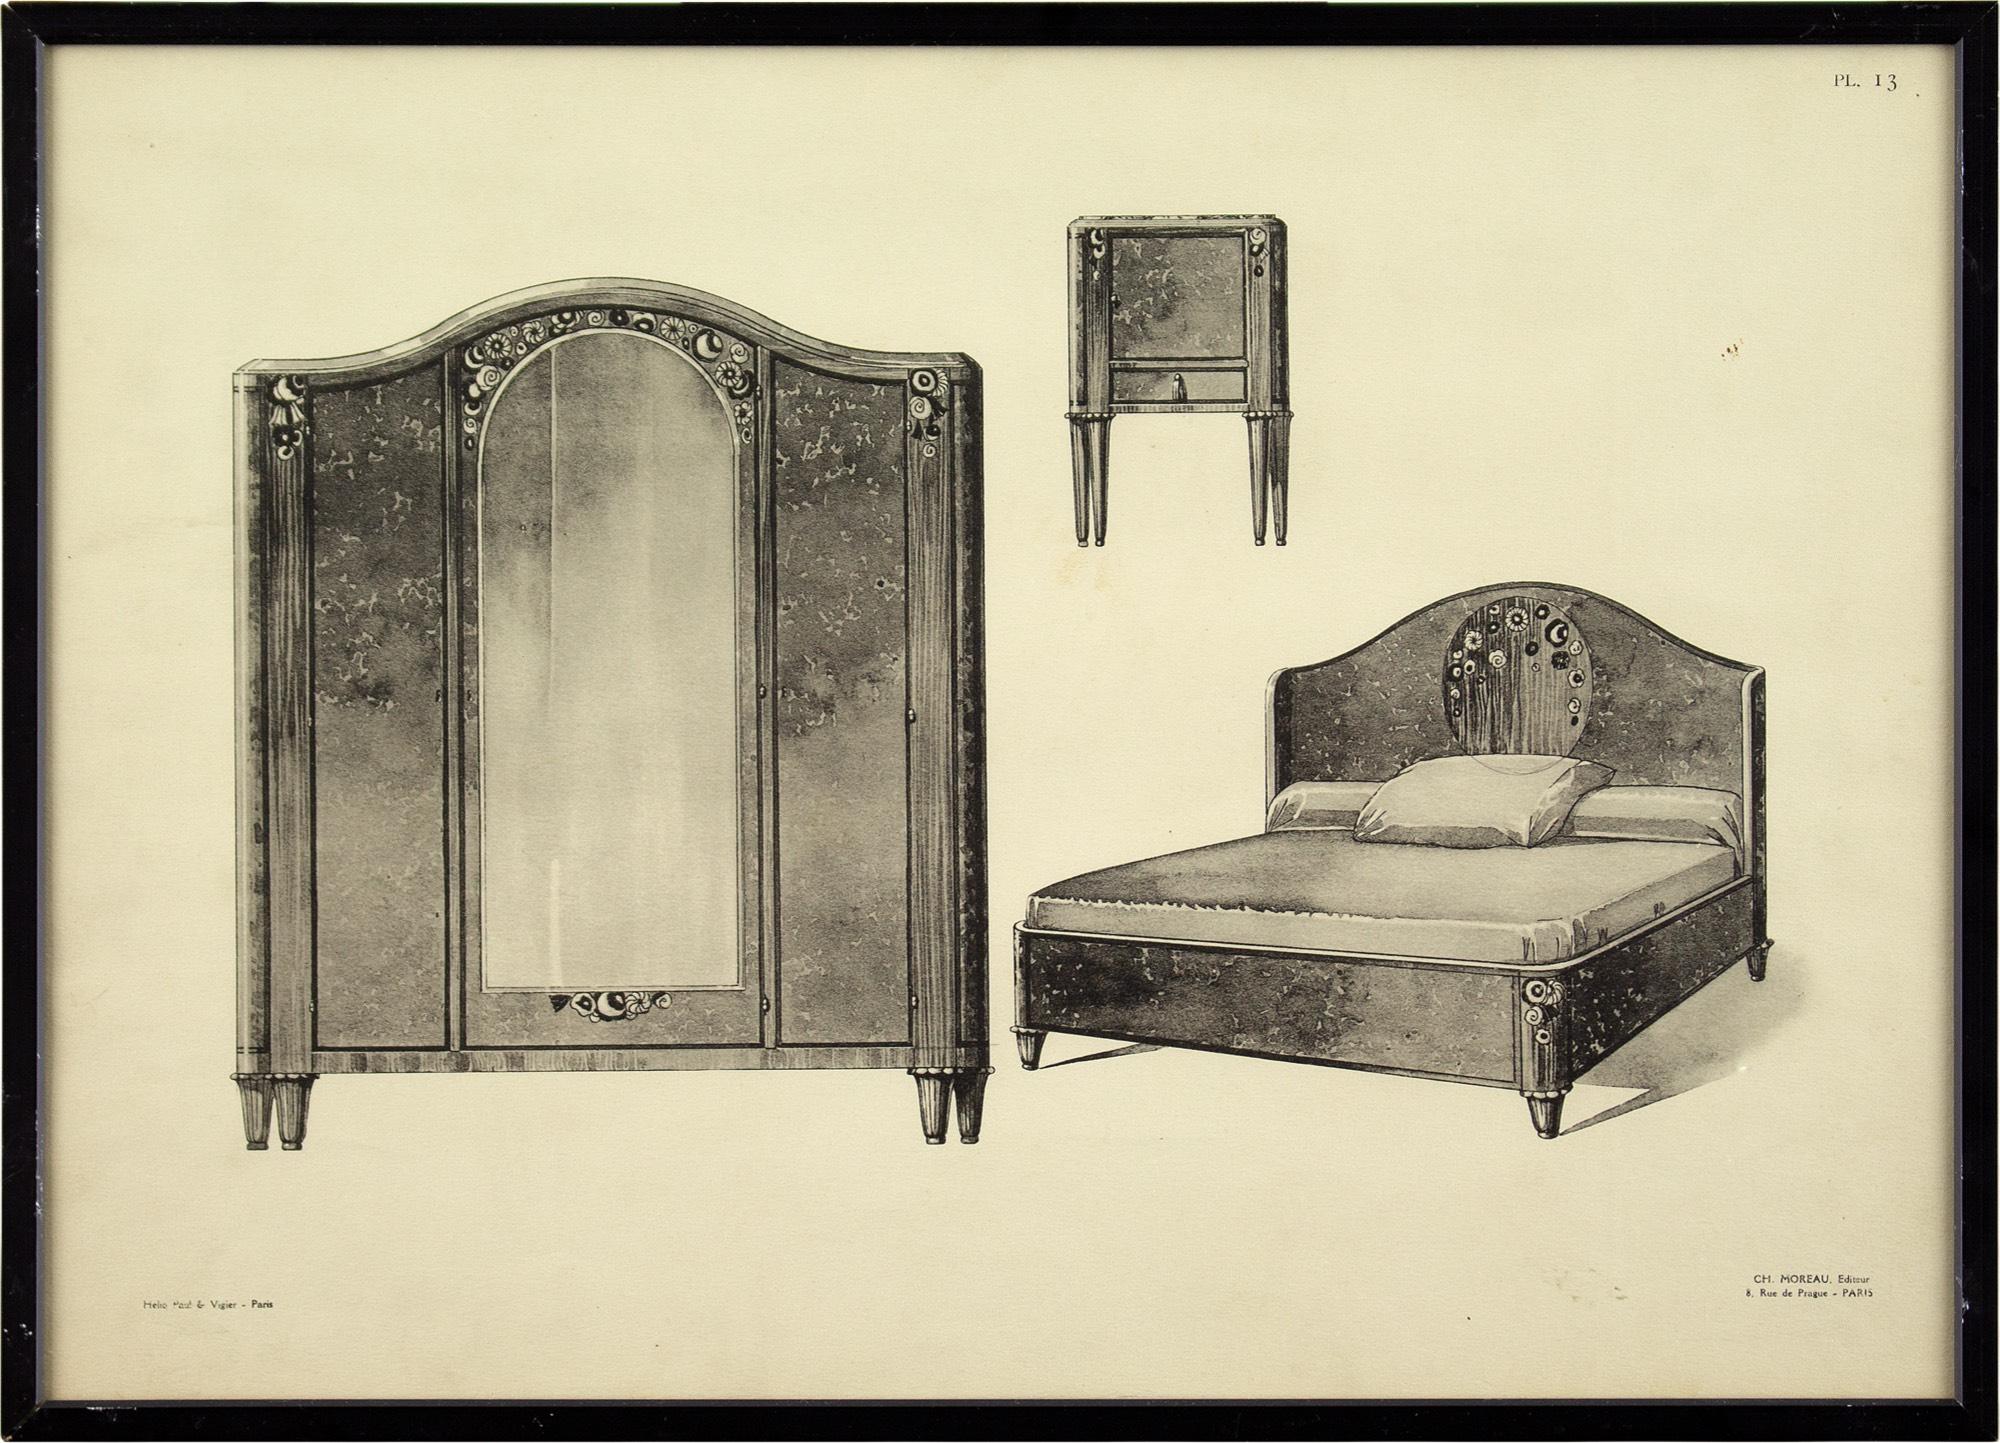 Dieser stilvolle Satz von vier französischen Heliogravüren aus dem frühen 20. Jahrhundert zeigt verschiedene Kombinationen von Schlafzimmermöbeln aus dieser Zeit. Sie wurden von Paul & Vigier veröffentlicht und bieten einen interessanten Einblick in